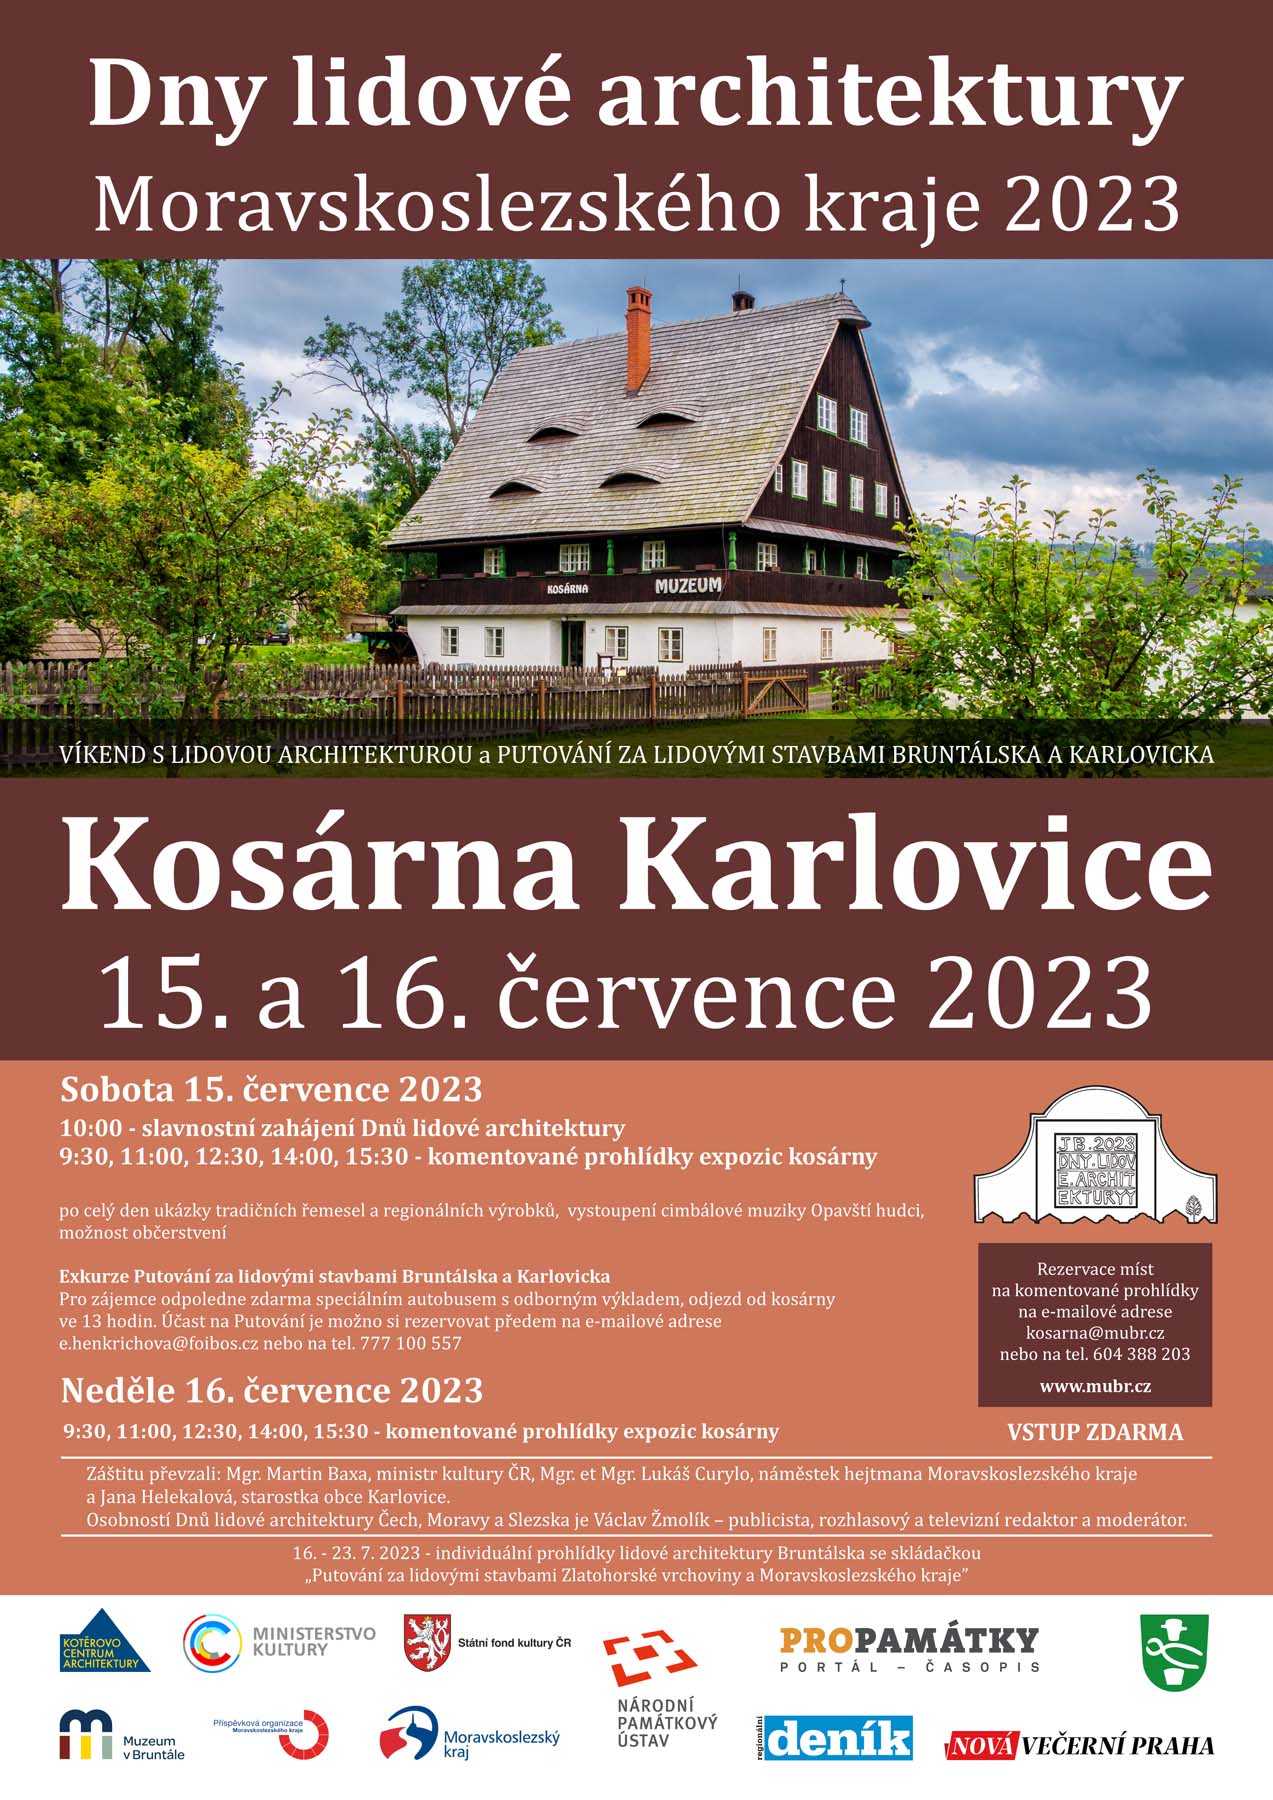 Kosárna v Karlovicích bude hostit dny lidové architektury